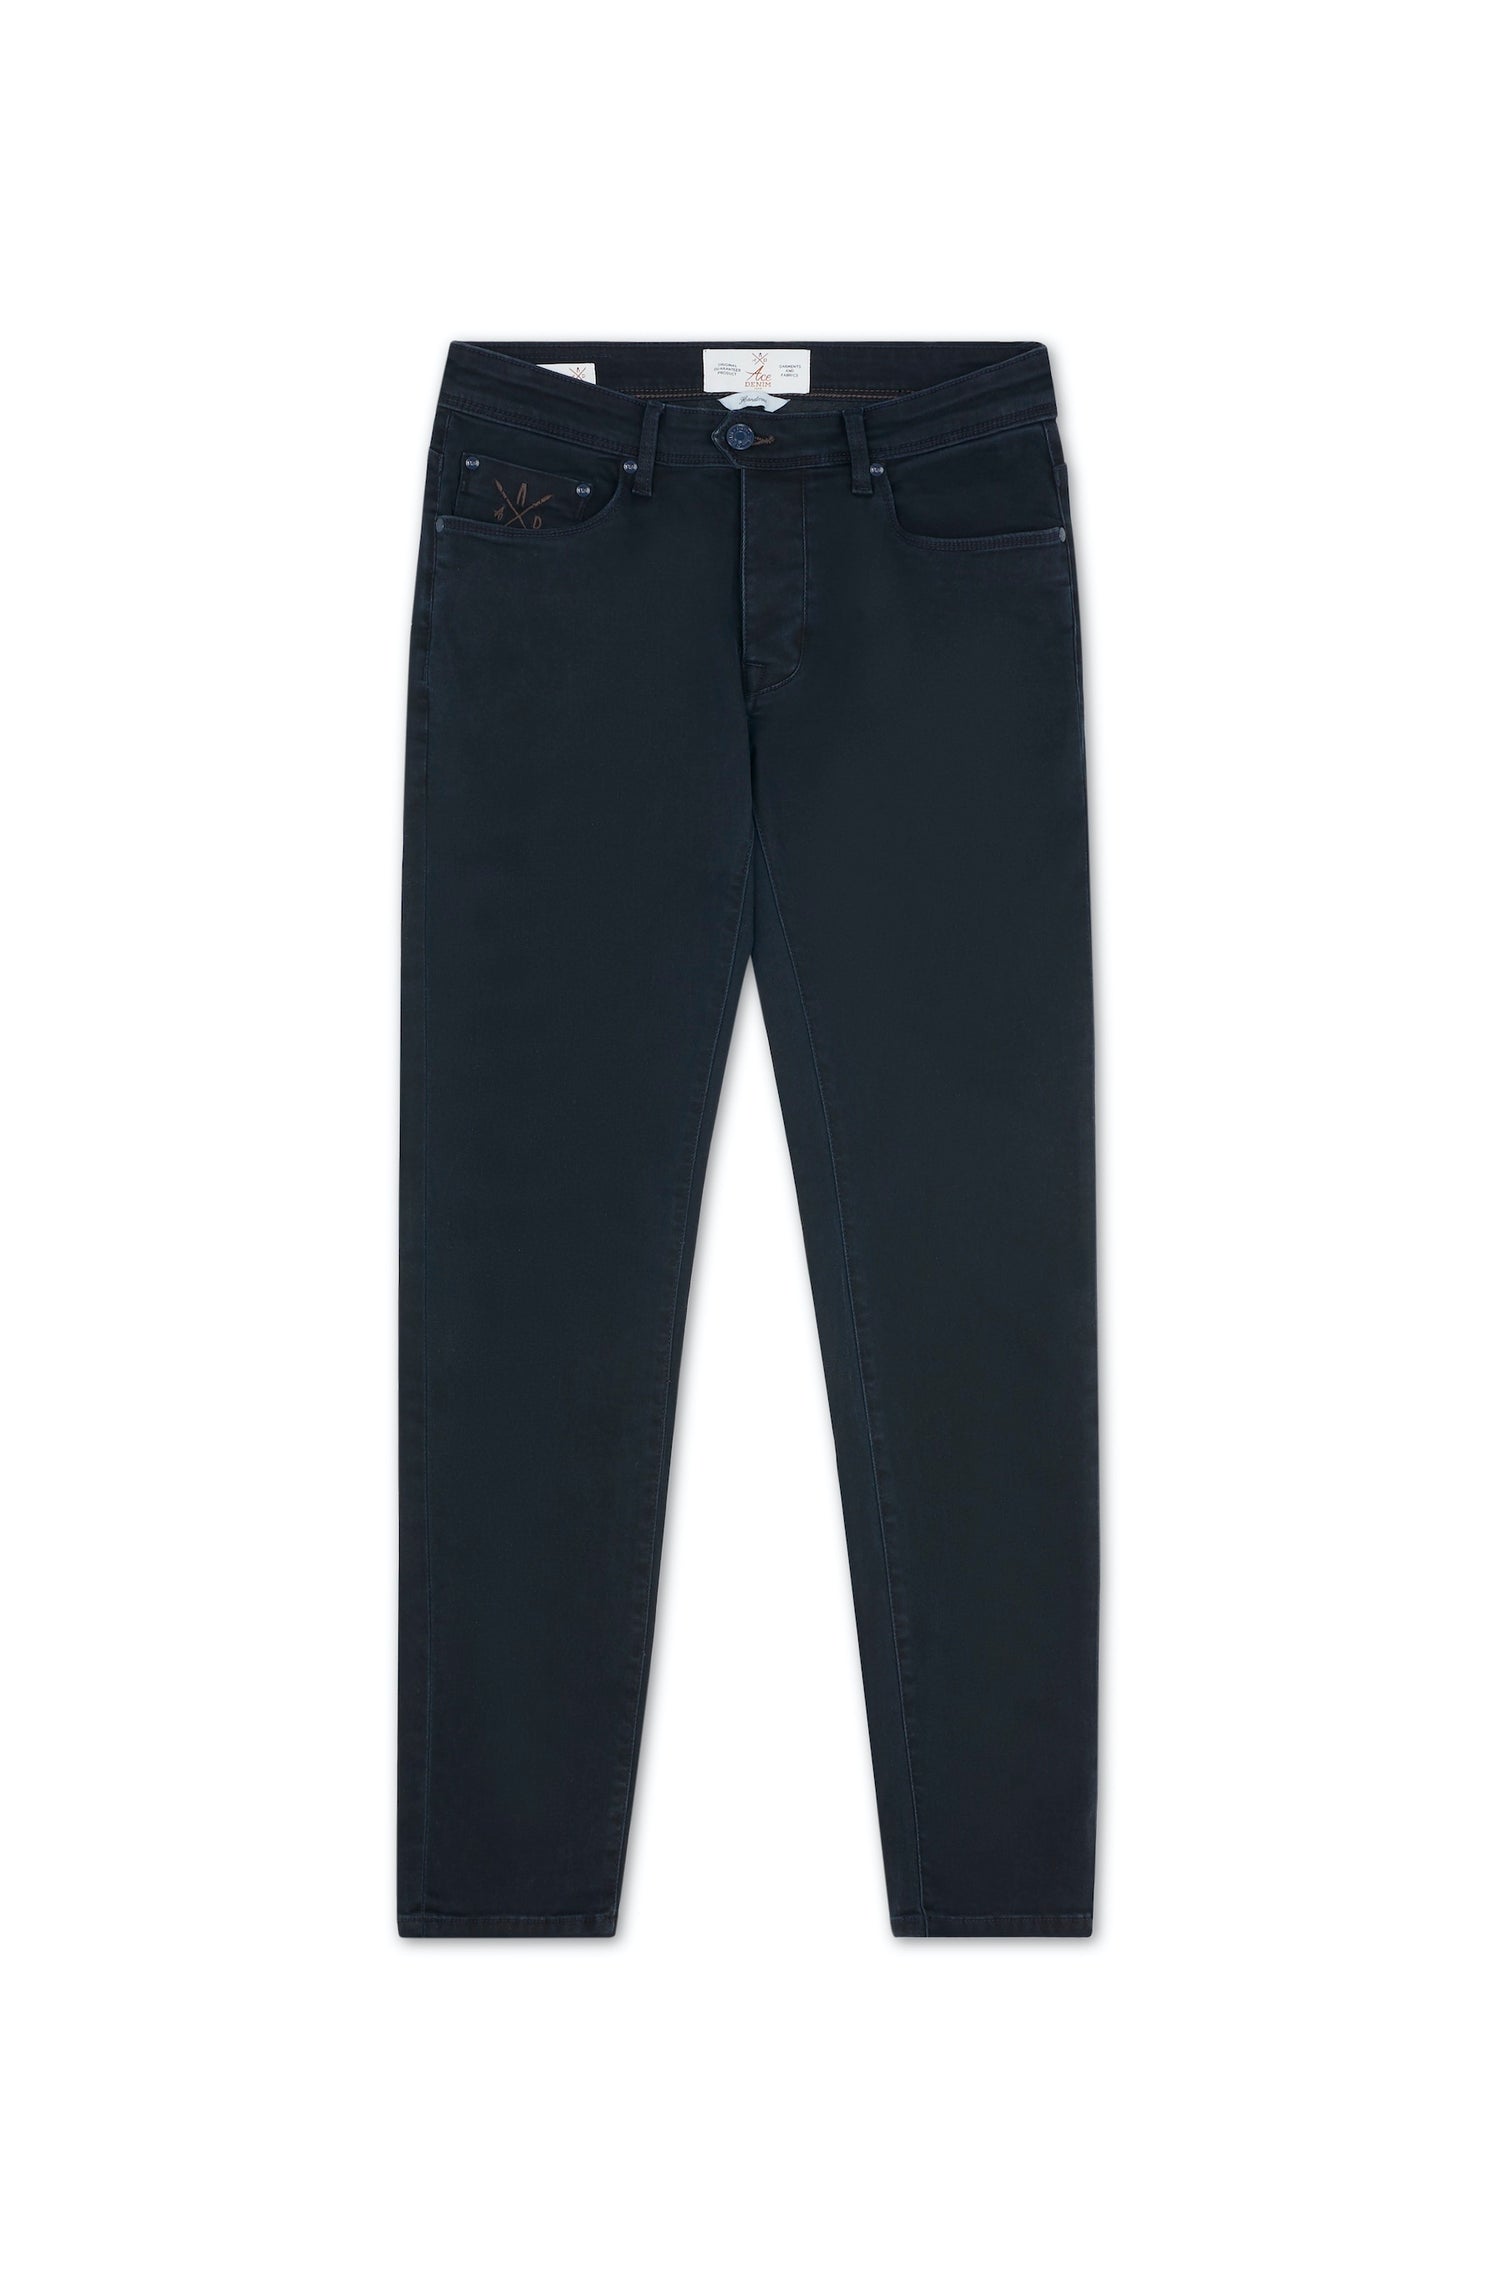 jeans homme bleu nuit slim stretch details marron